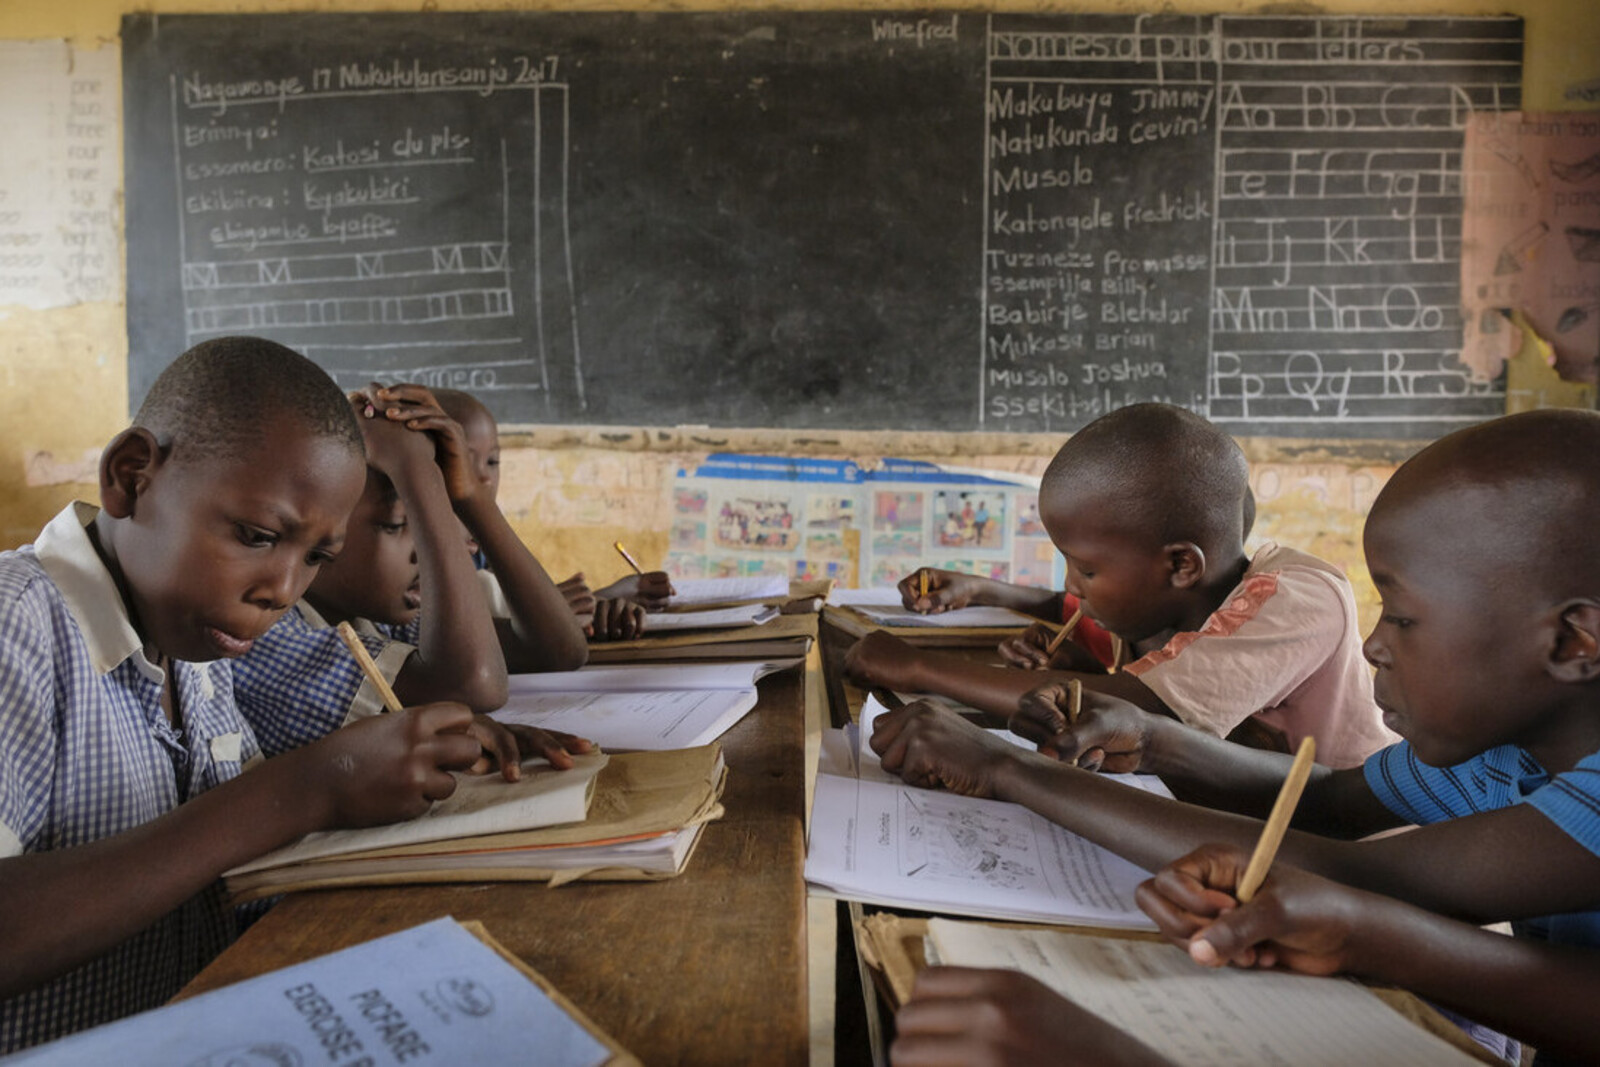 Kinder in Uganda lernen in der Schule